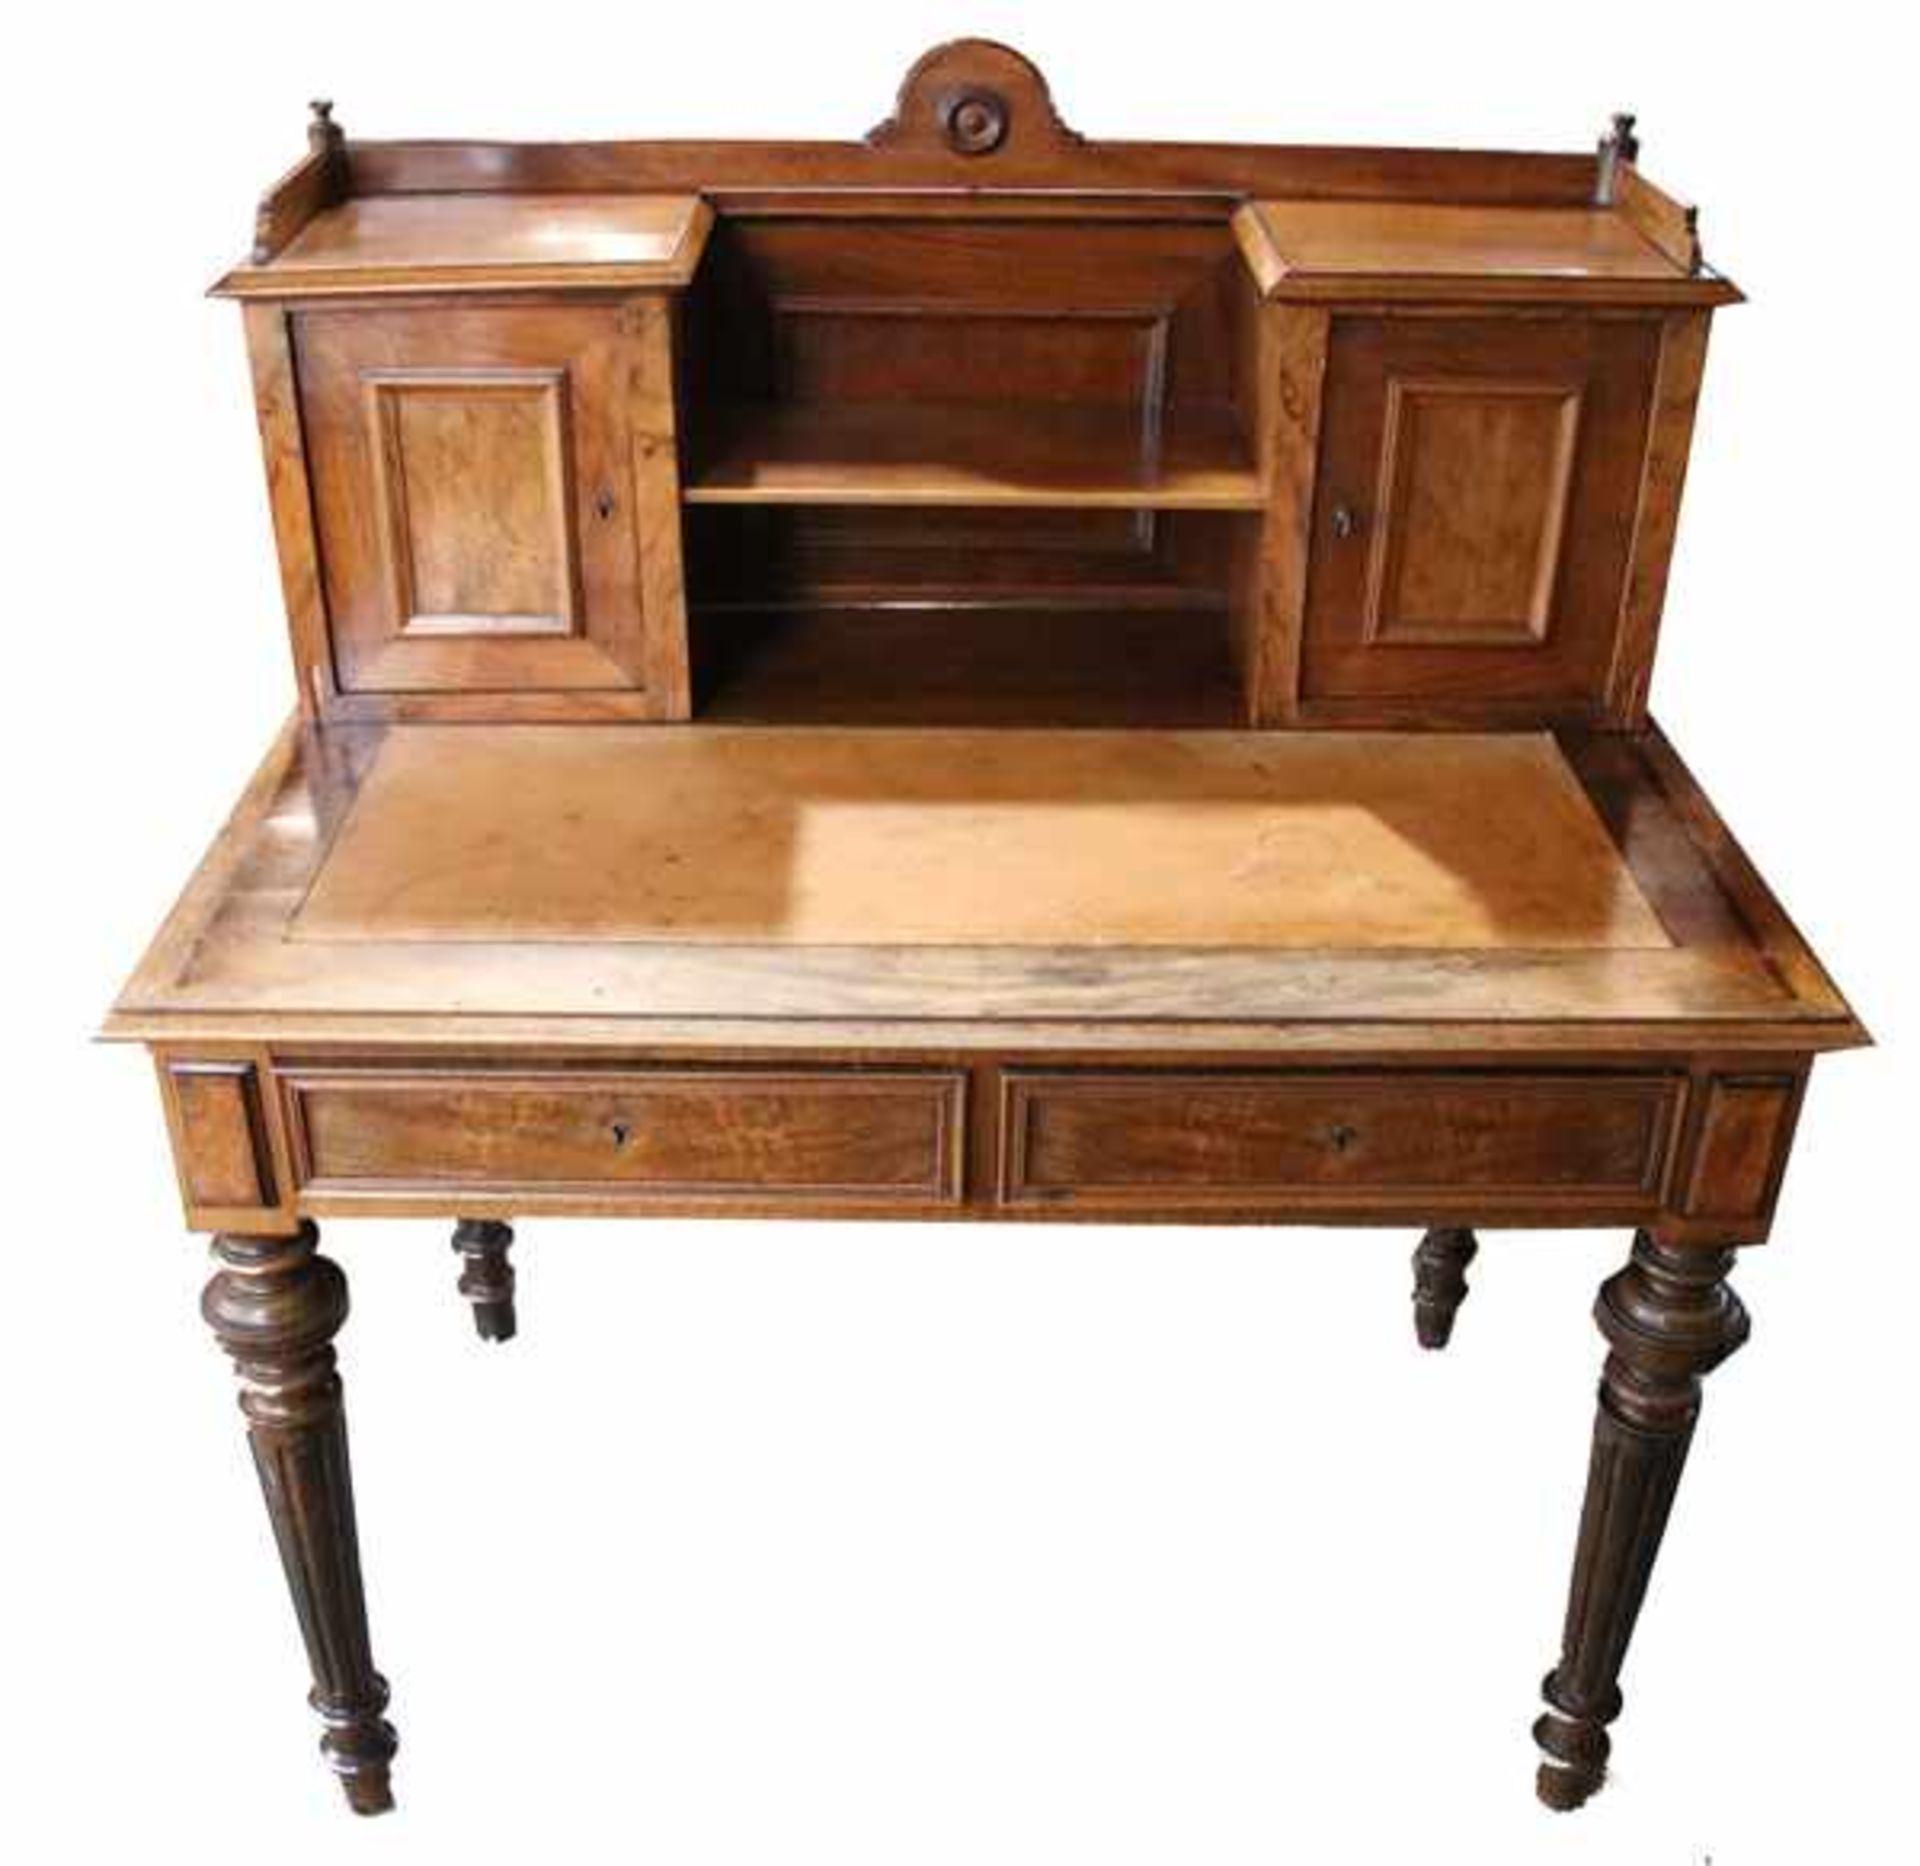 Aufsatz-Schreibtisch, Korpus mit 2 Türen und 2 Schüben, auf teils gedrechselten Beinen, beige